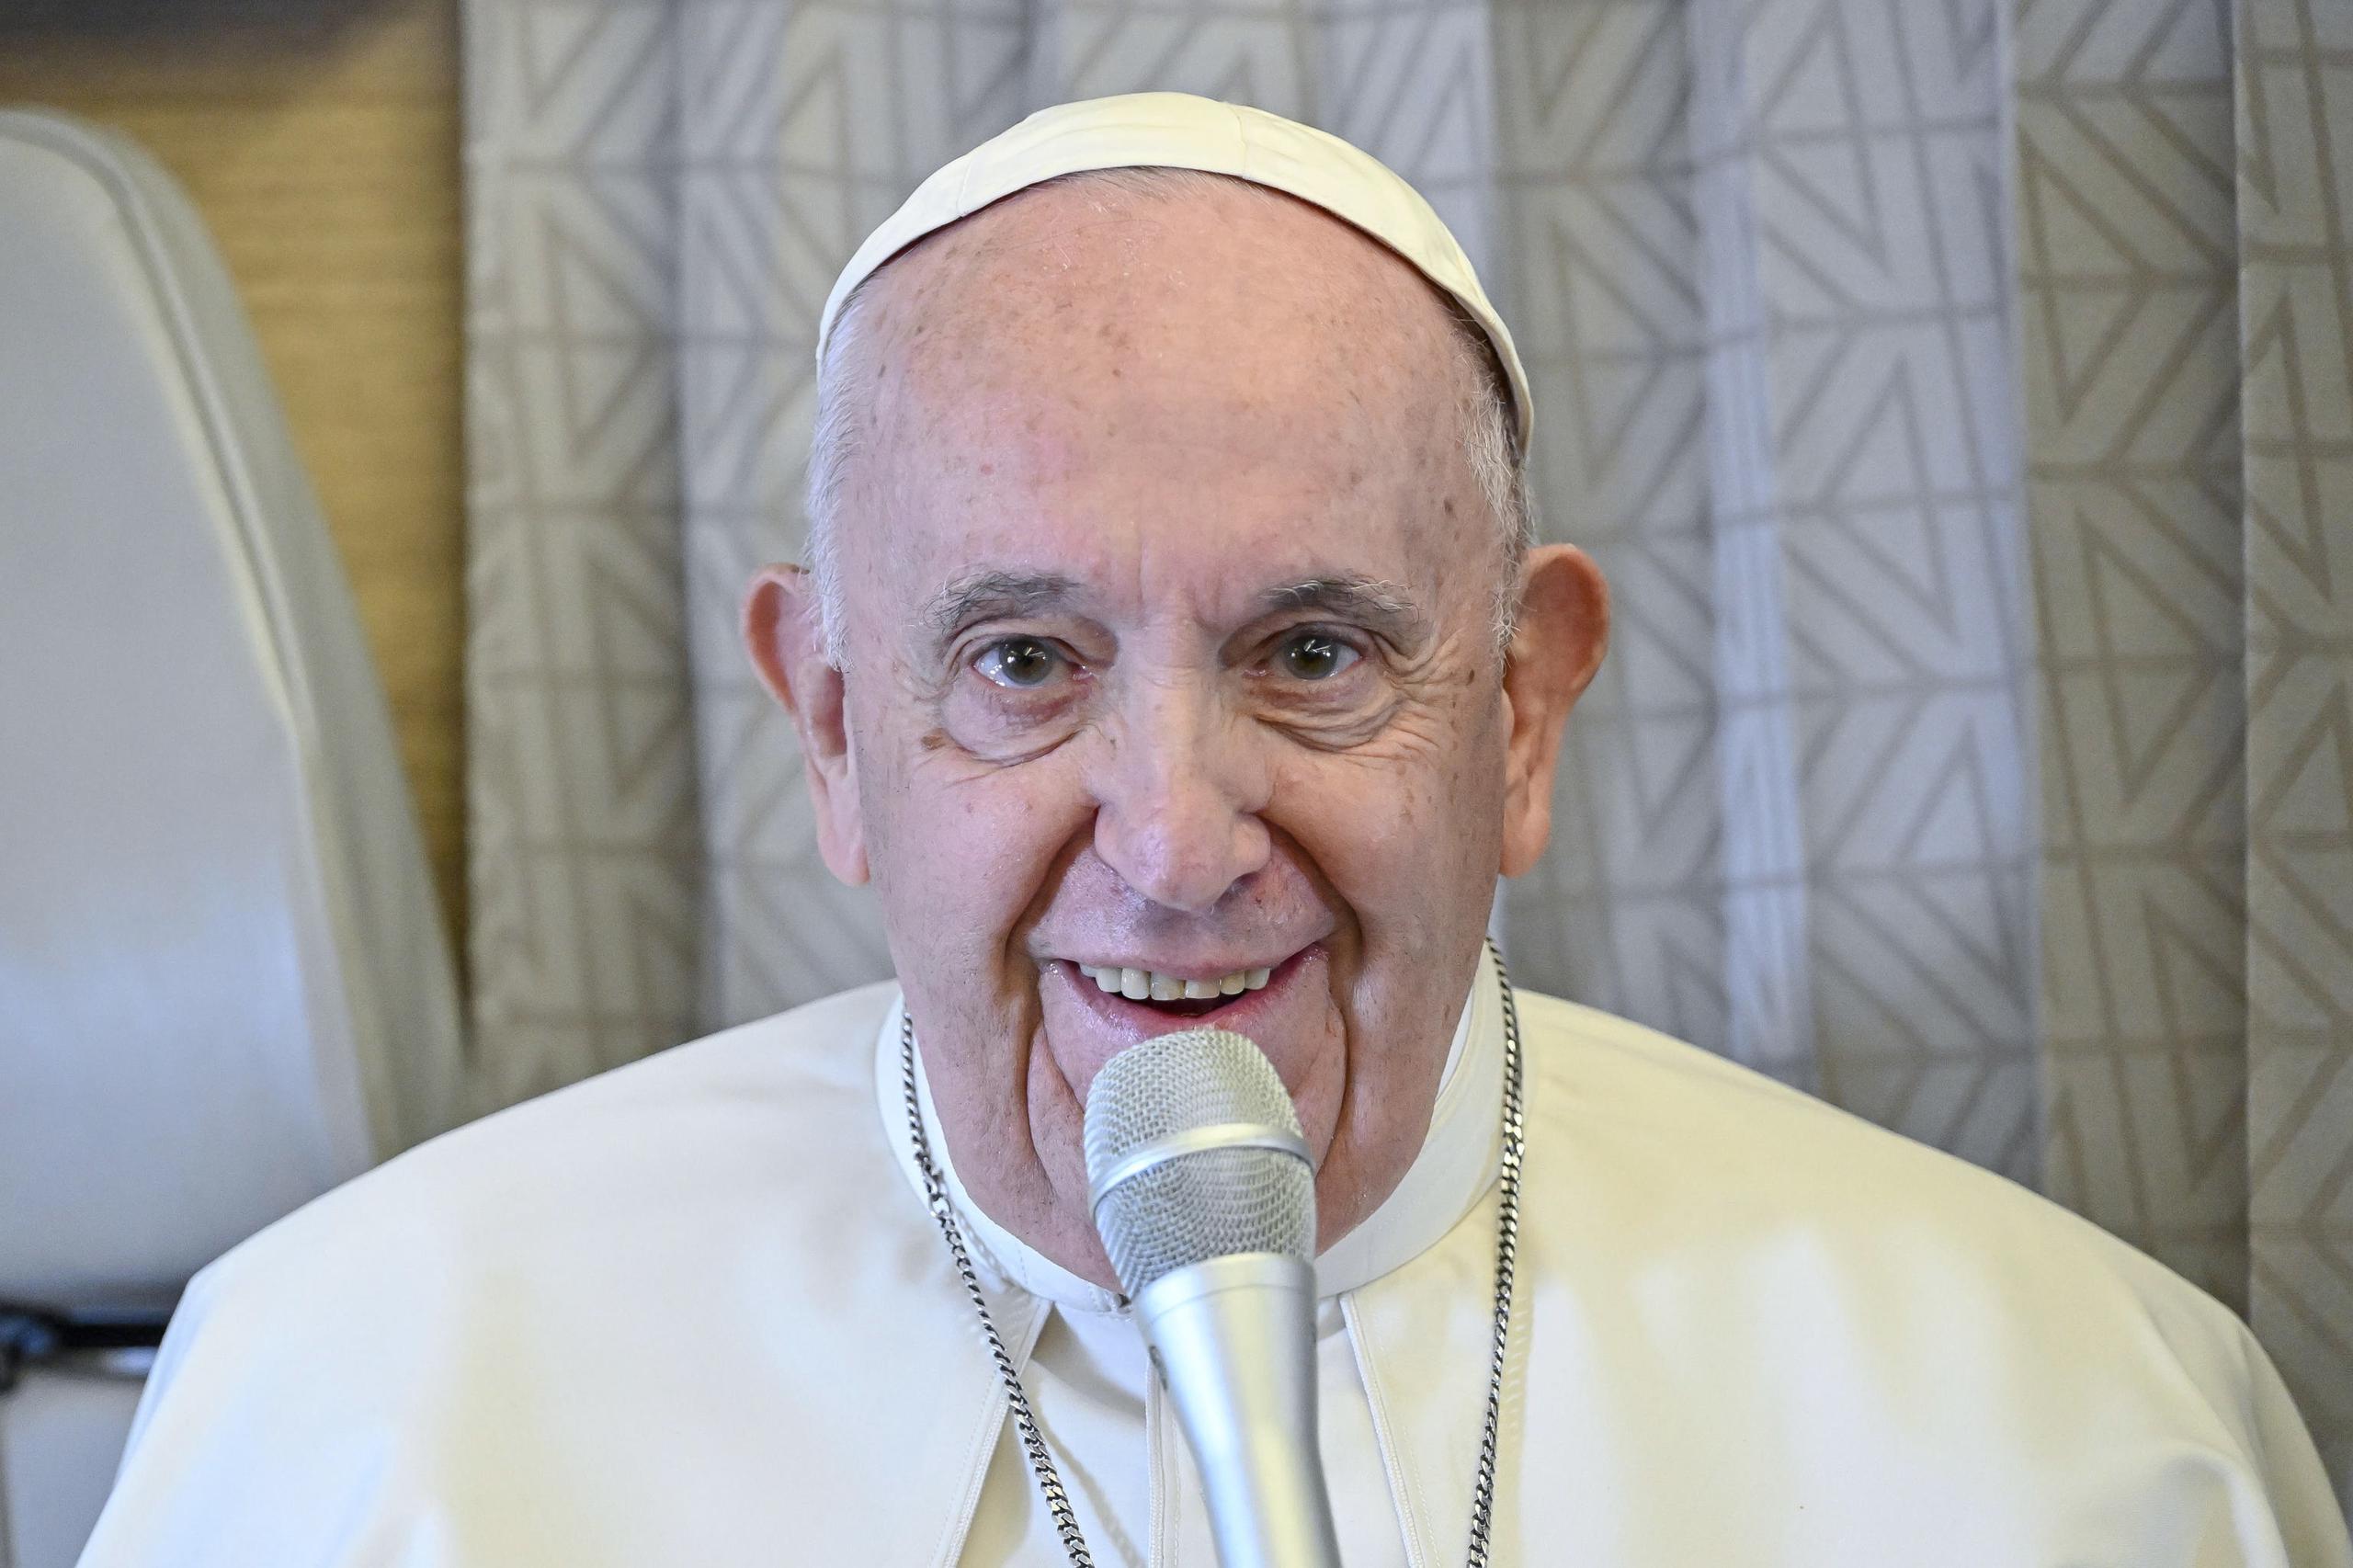 El papa Francisco responde este jueves a las preguntas de los periodistas durante una conferencia a bordo del avión papal en su vuelo de regreso a Roma tras visitar Kazajistán. (EFE /EPA/ALESSANDRO DI MEO / POOL)